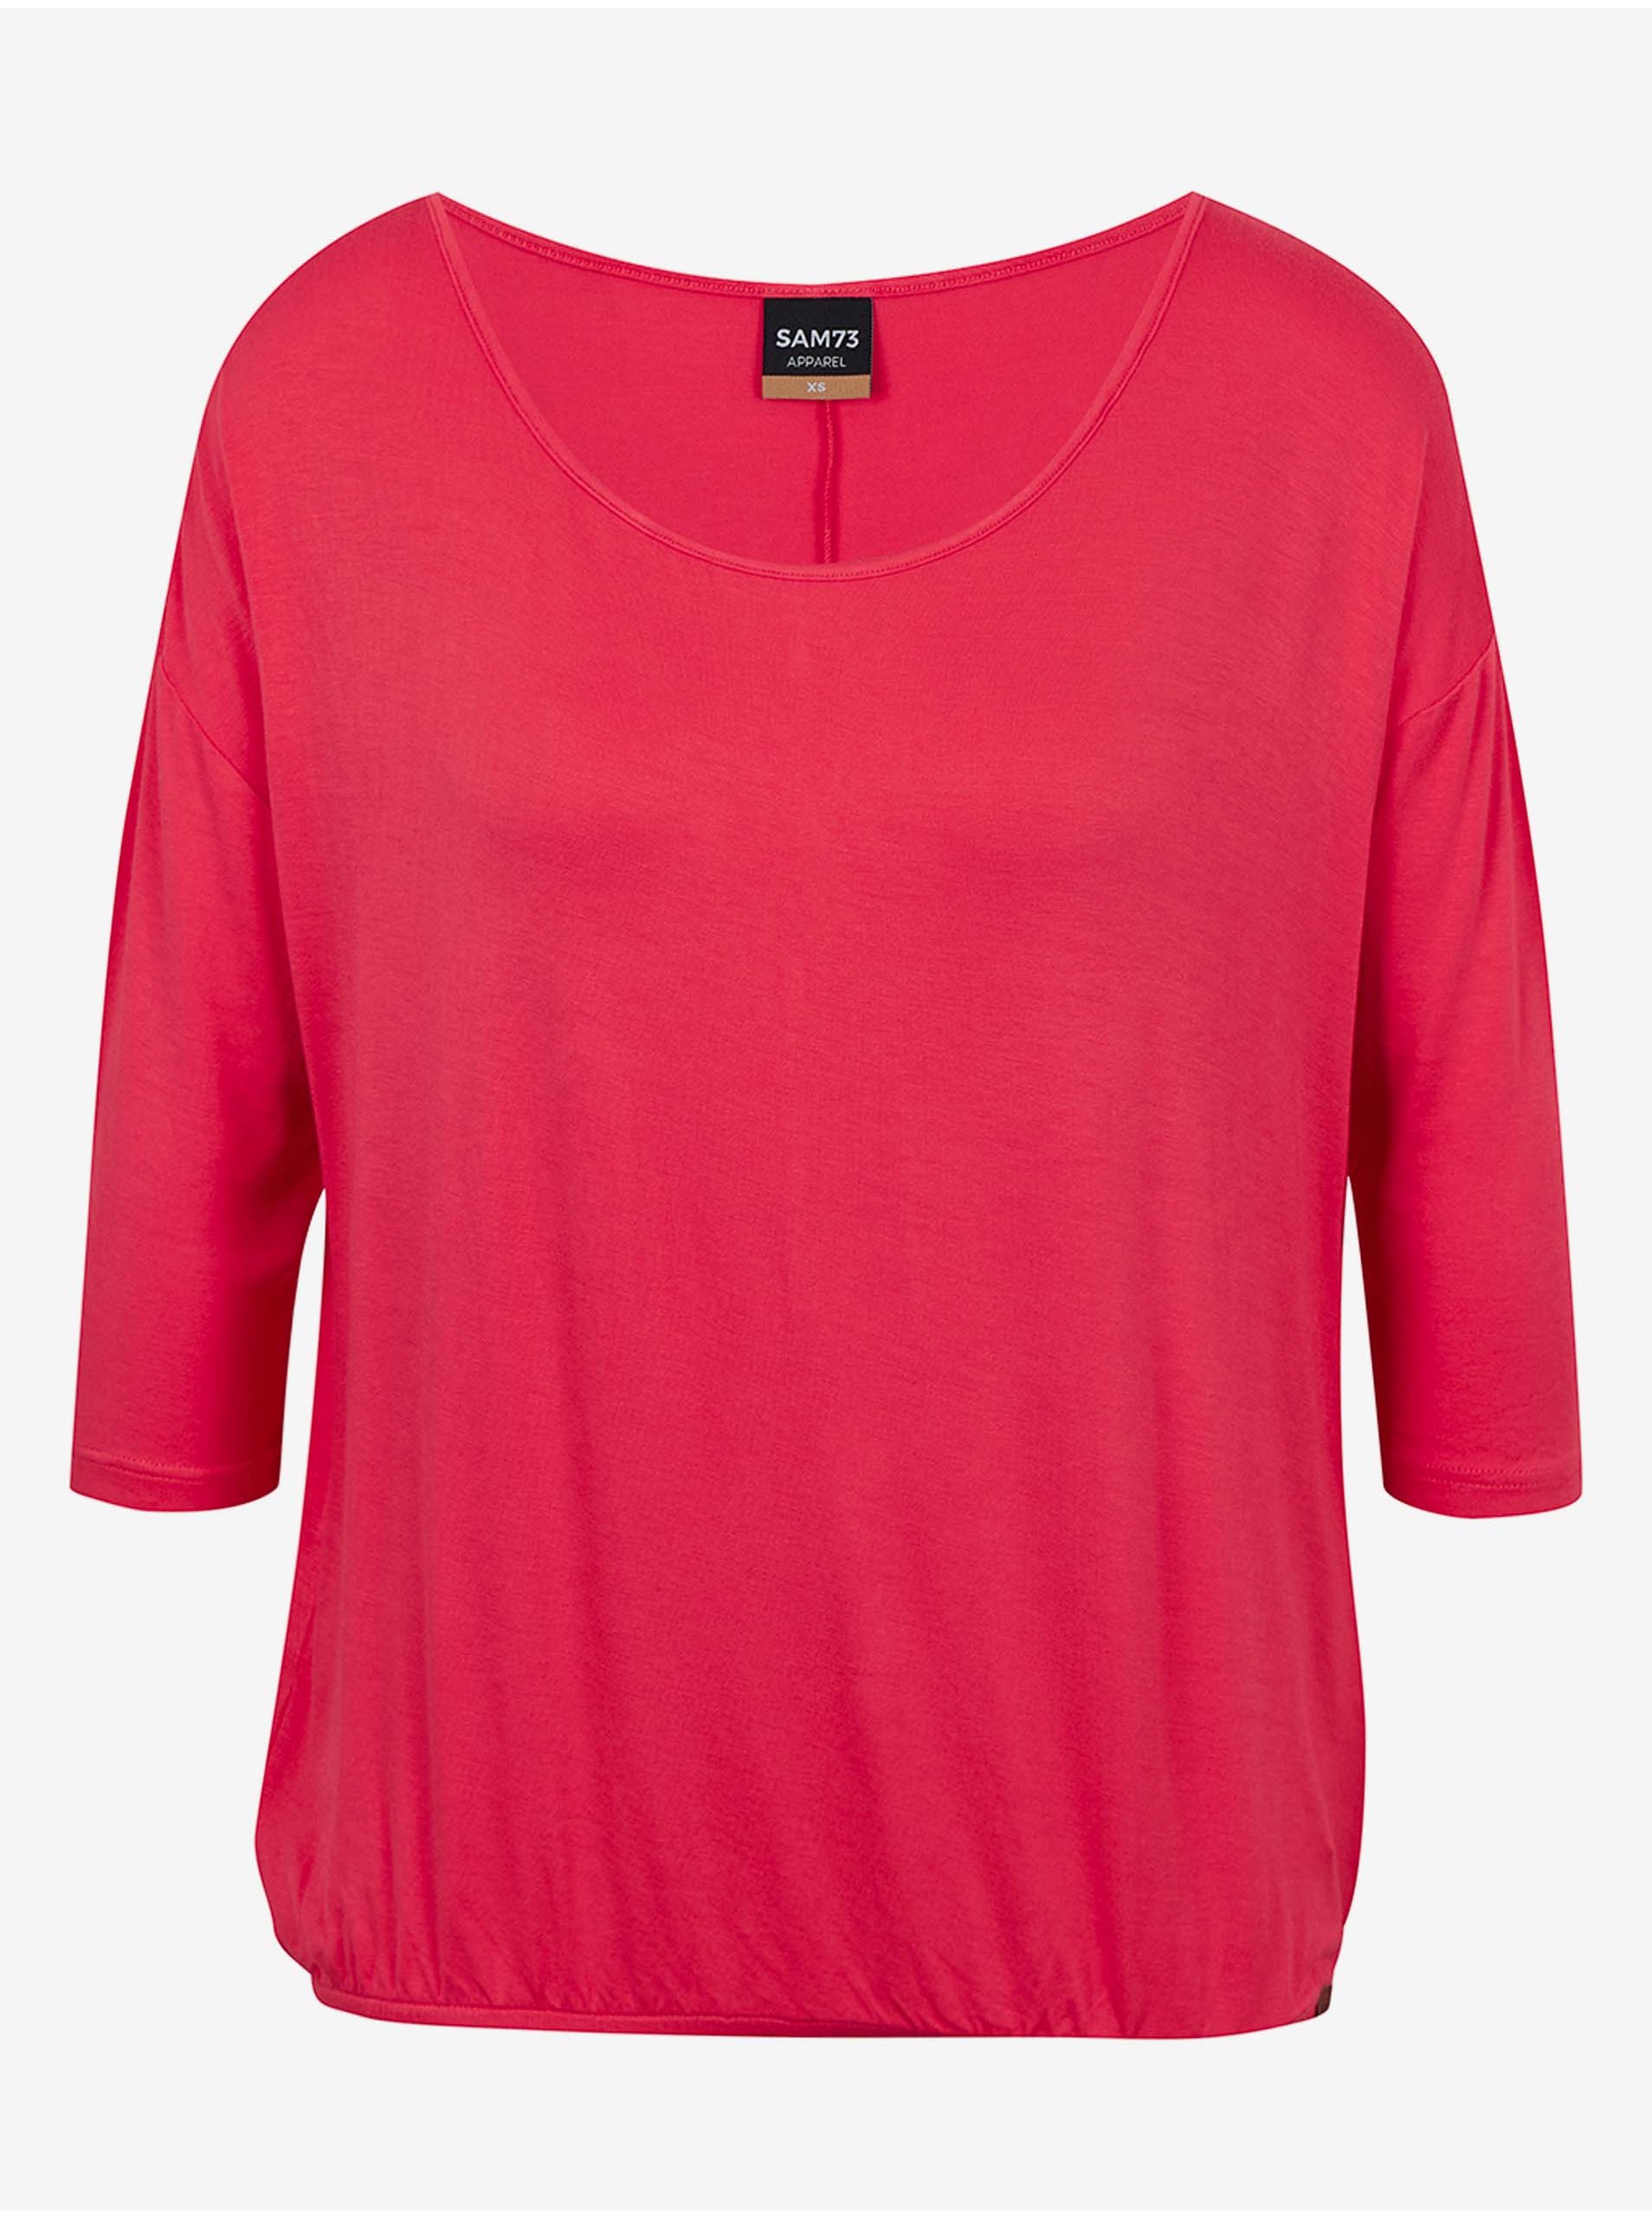 E-shop Tmavě růžové dámské tričko SAM 73 Gladys